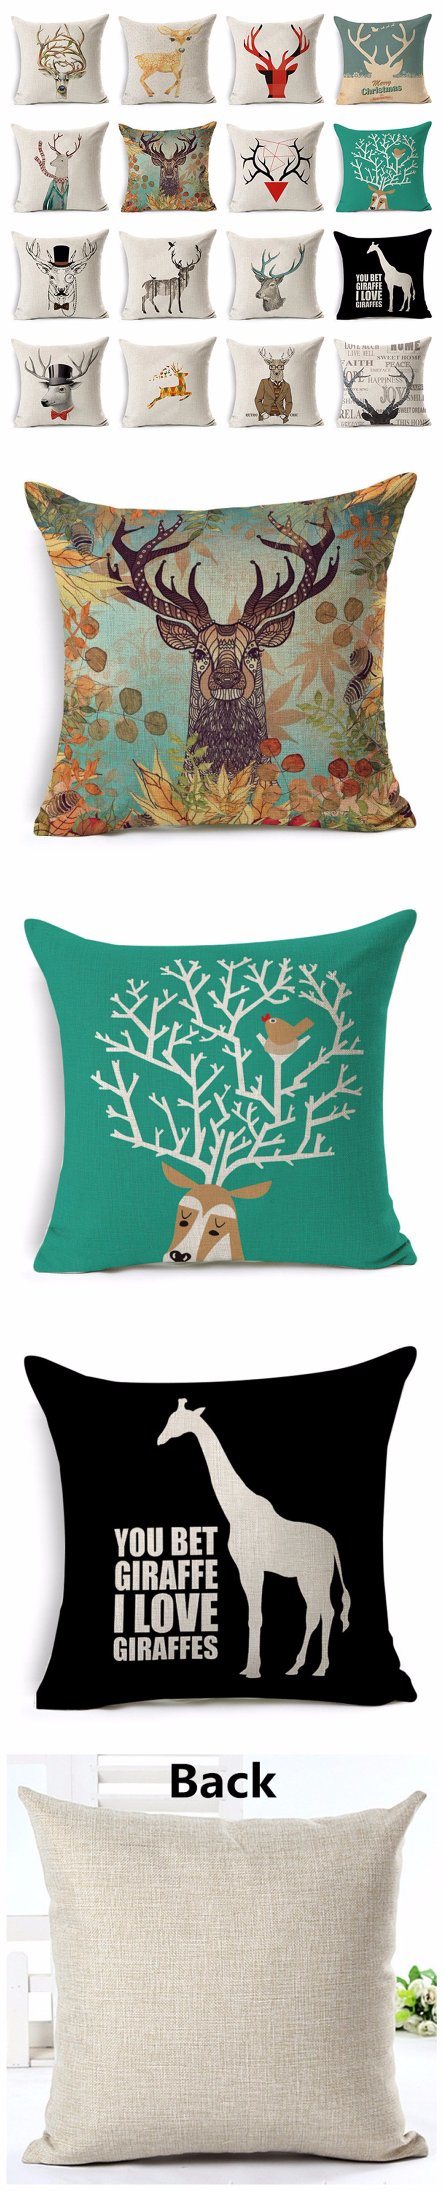 Reindeer Giraffe Sika Deer Cotton Linen Pillowcase Decorative Cushion Pillow